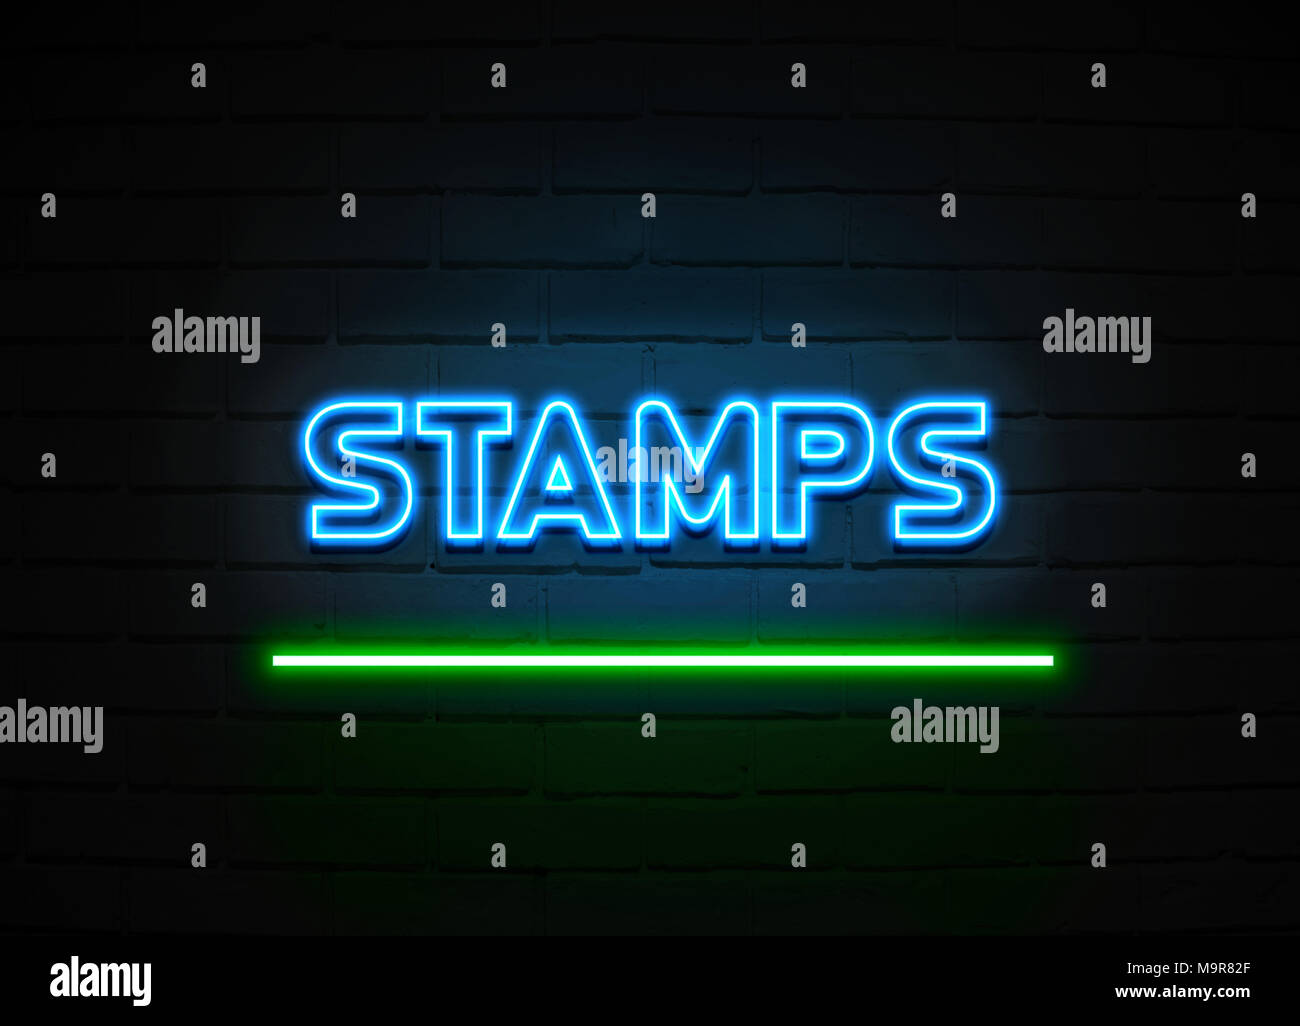 Briefmarken Leuchtreklame - glühende Leuchtreklame auf brickwall Wand - 3D-Royalty Free Stock Illustration dargestellt. Stockfoto